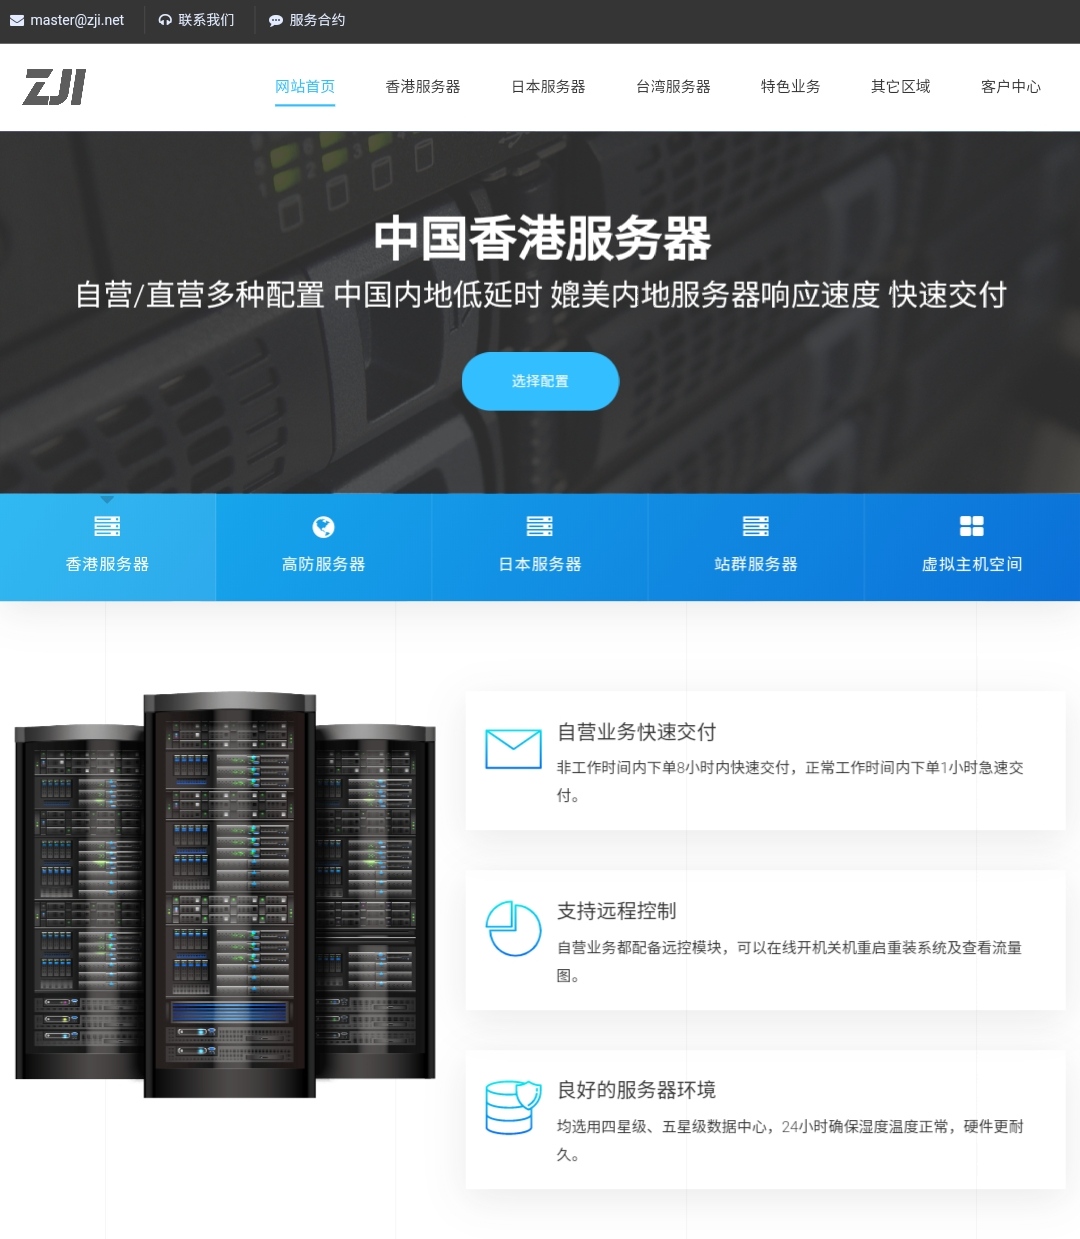 zji：台湾cn2服务器，665元/月，e5-2650/32g内存/1TSSD/10M带宽,IMG_20210120_002254.jpg,香港服务器,日本服务器,独立服务器,高防服务器,云服务器,性价比服务器,vps云主机,便宜服务器,第1张